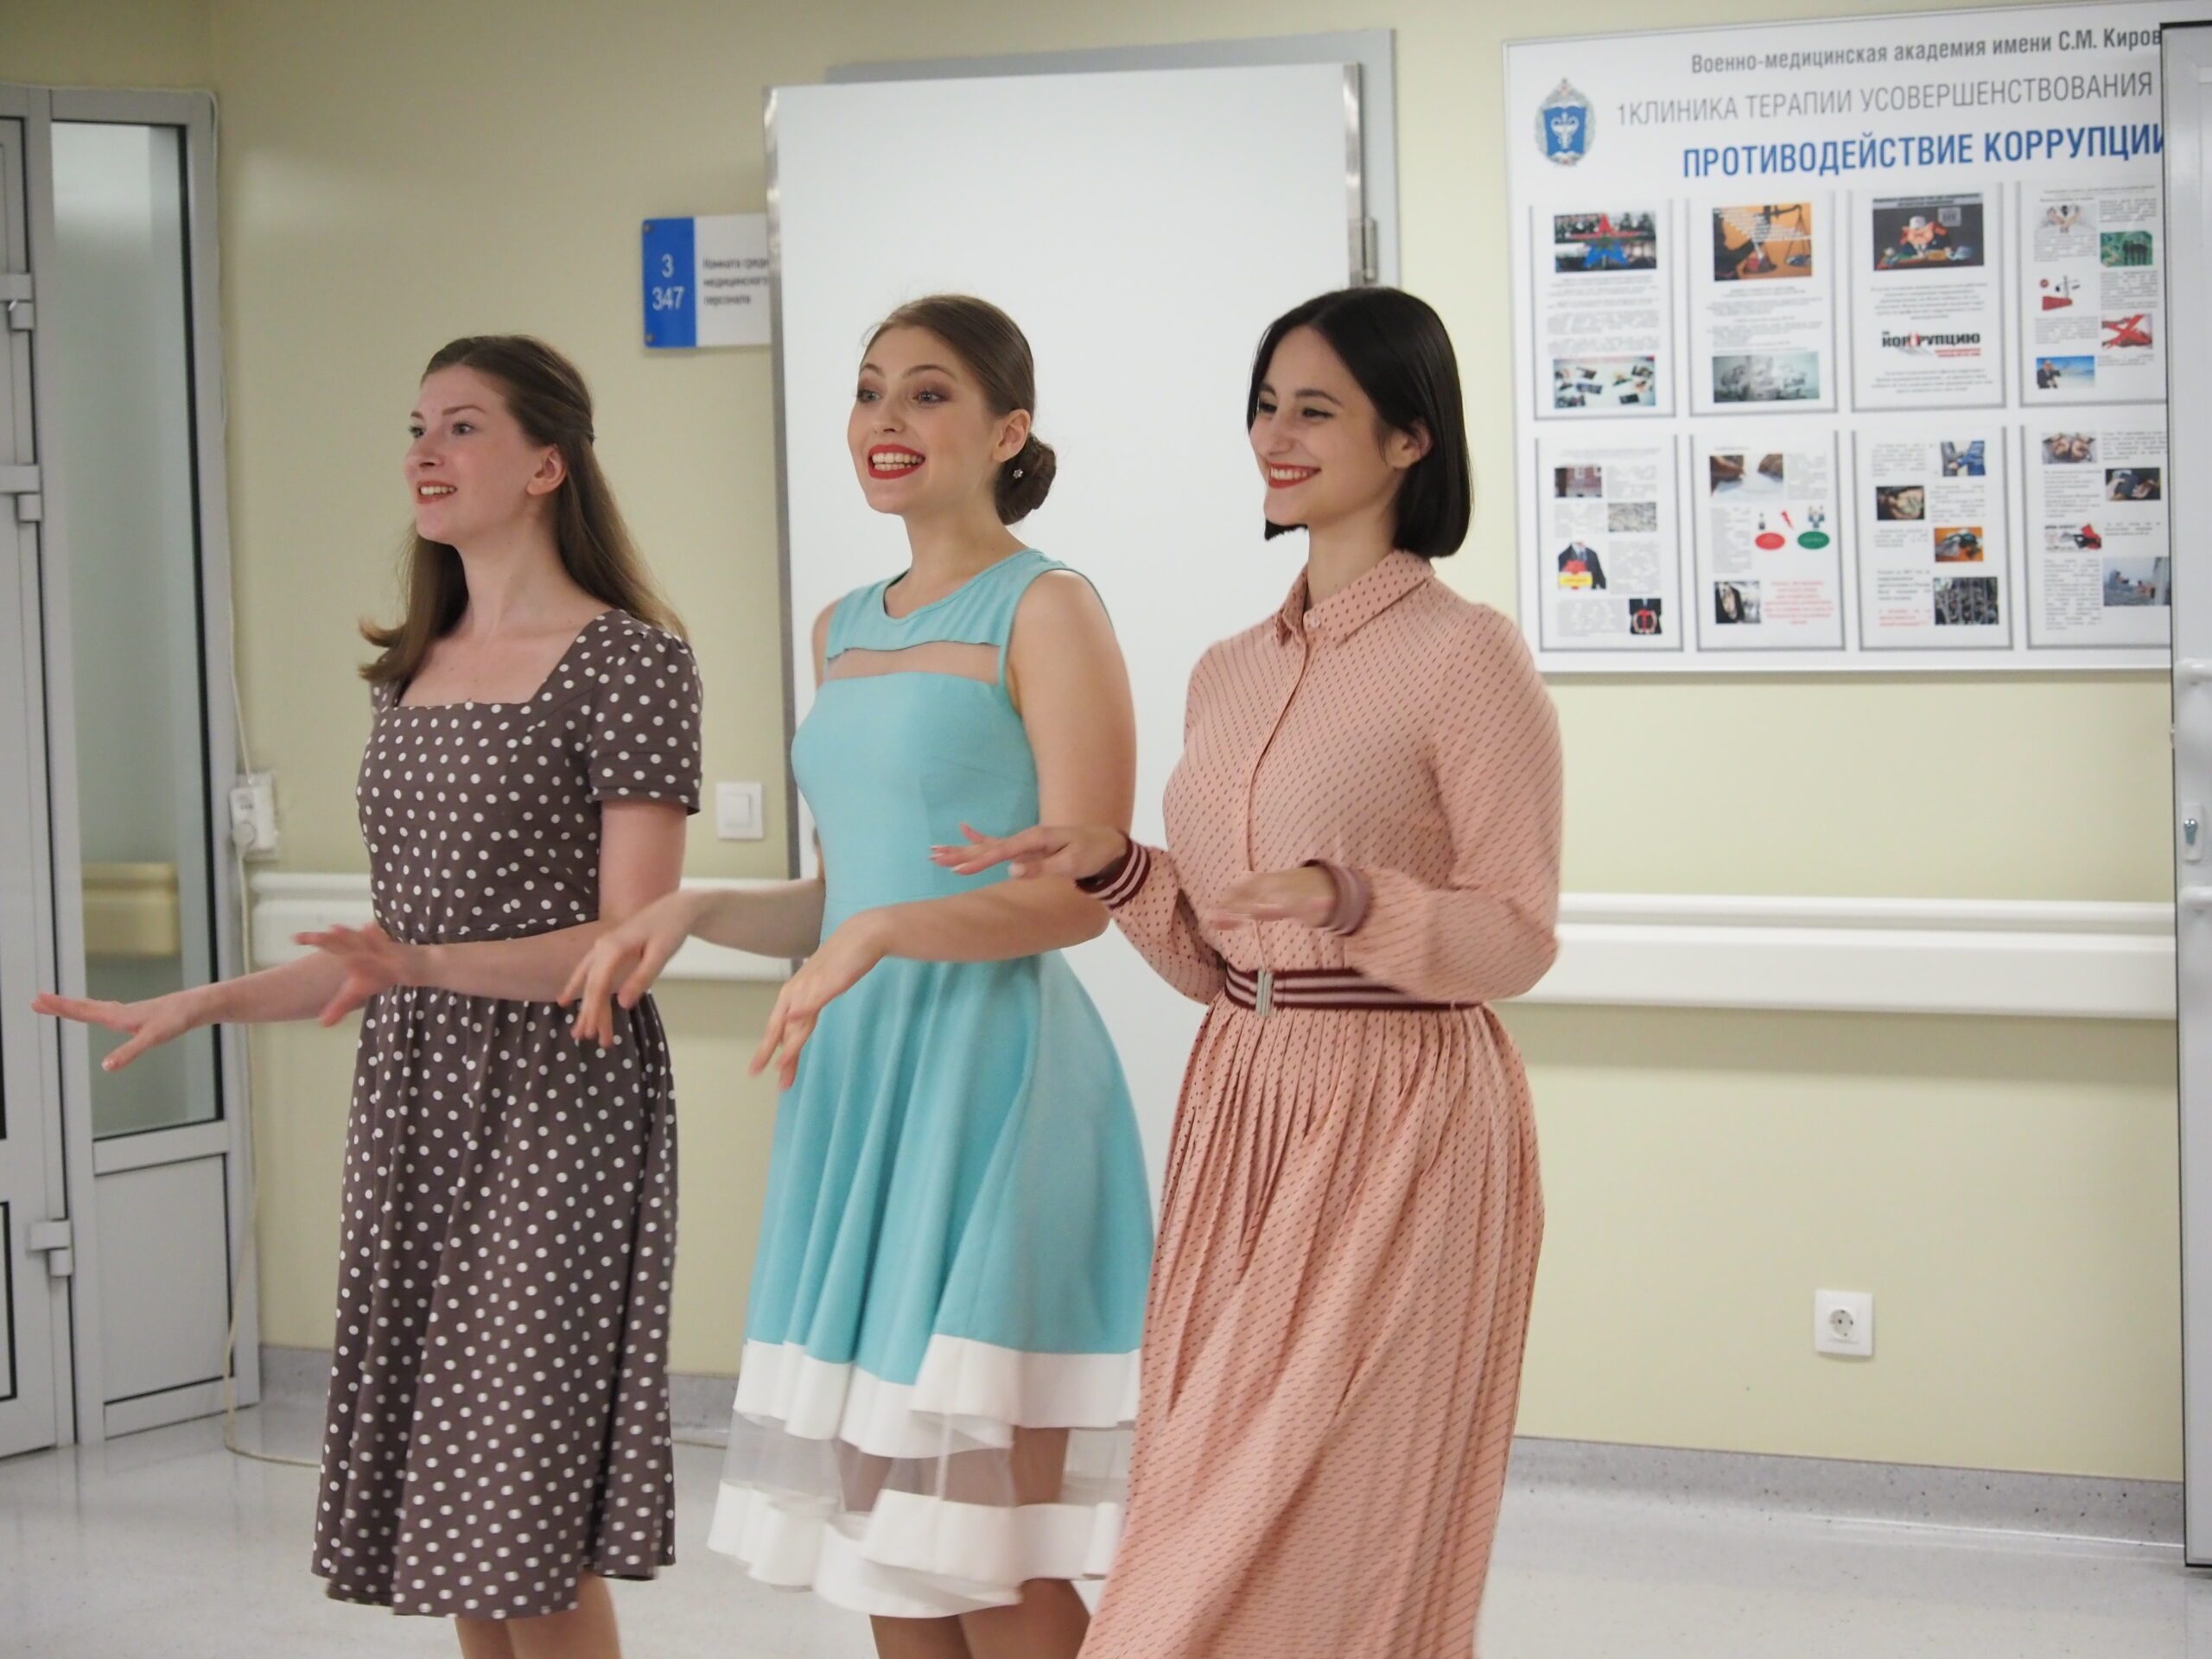 Студенты театральной академии на Моховой выступили перед военнослужащими, проходящими лечение в академии